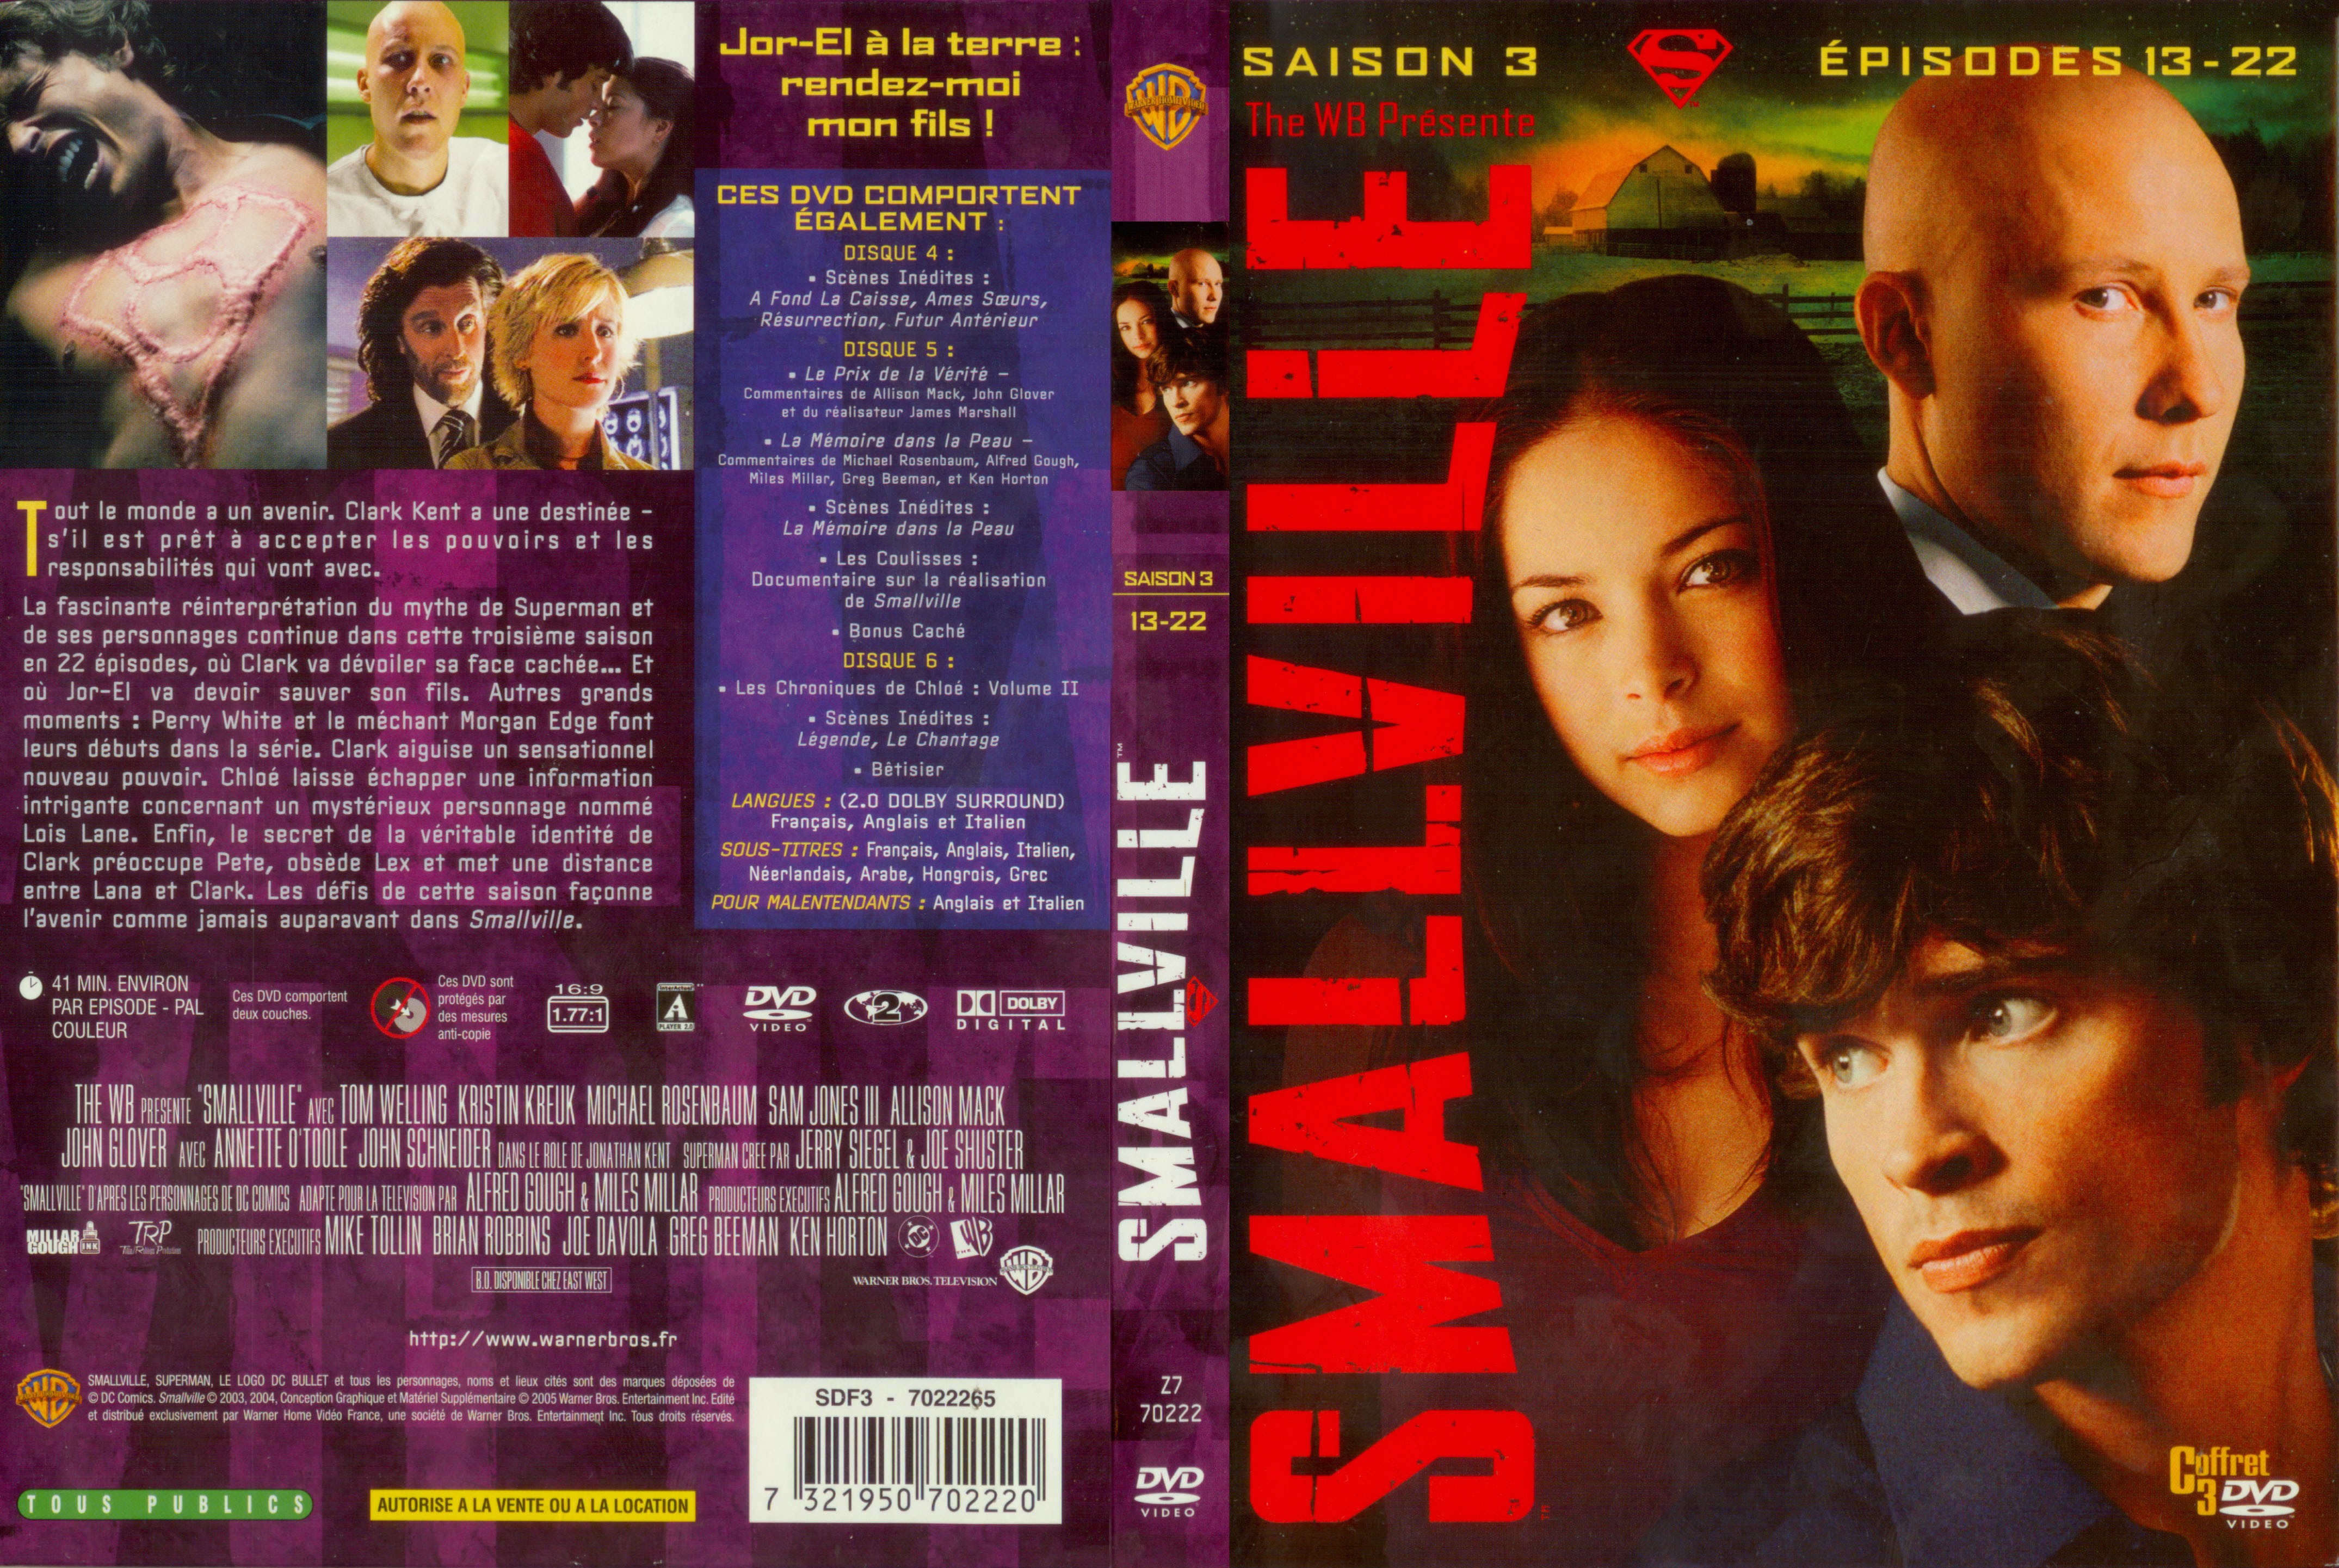 Jaquette DVD Smallville saison 3 COFFRET 2